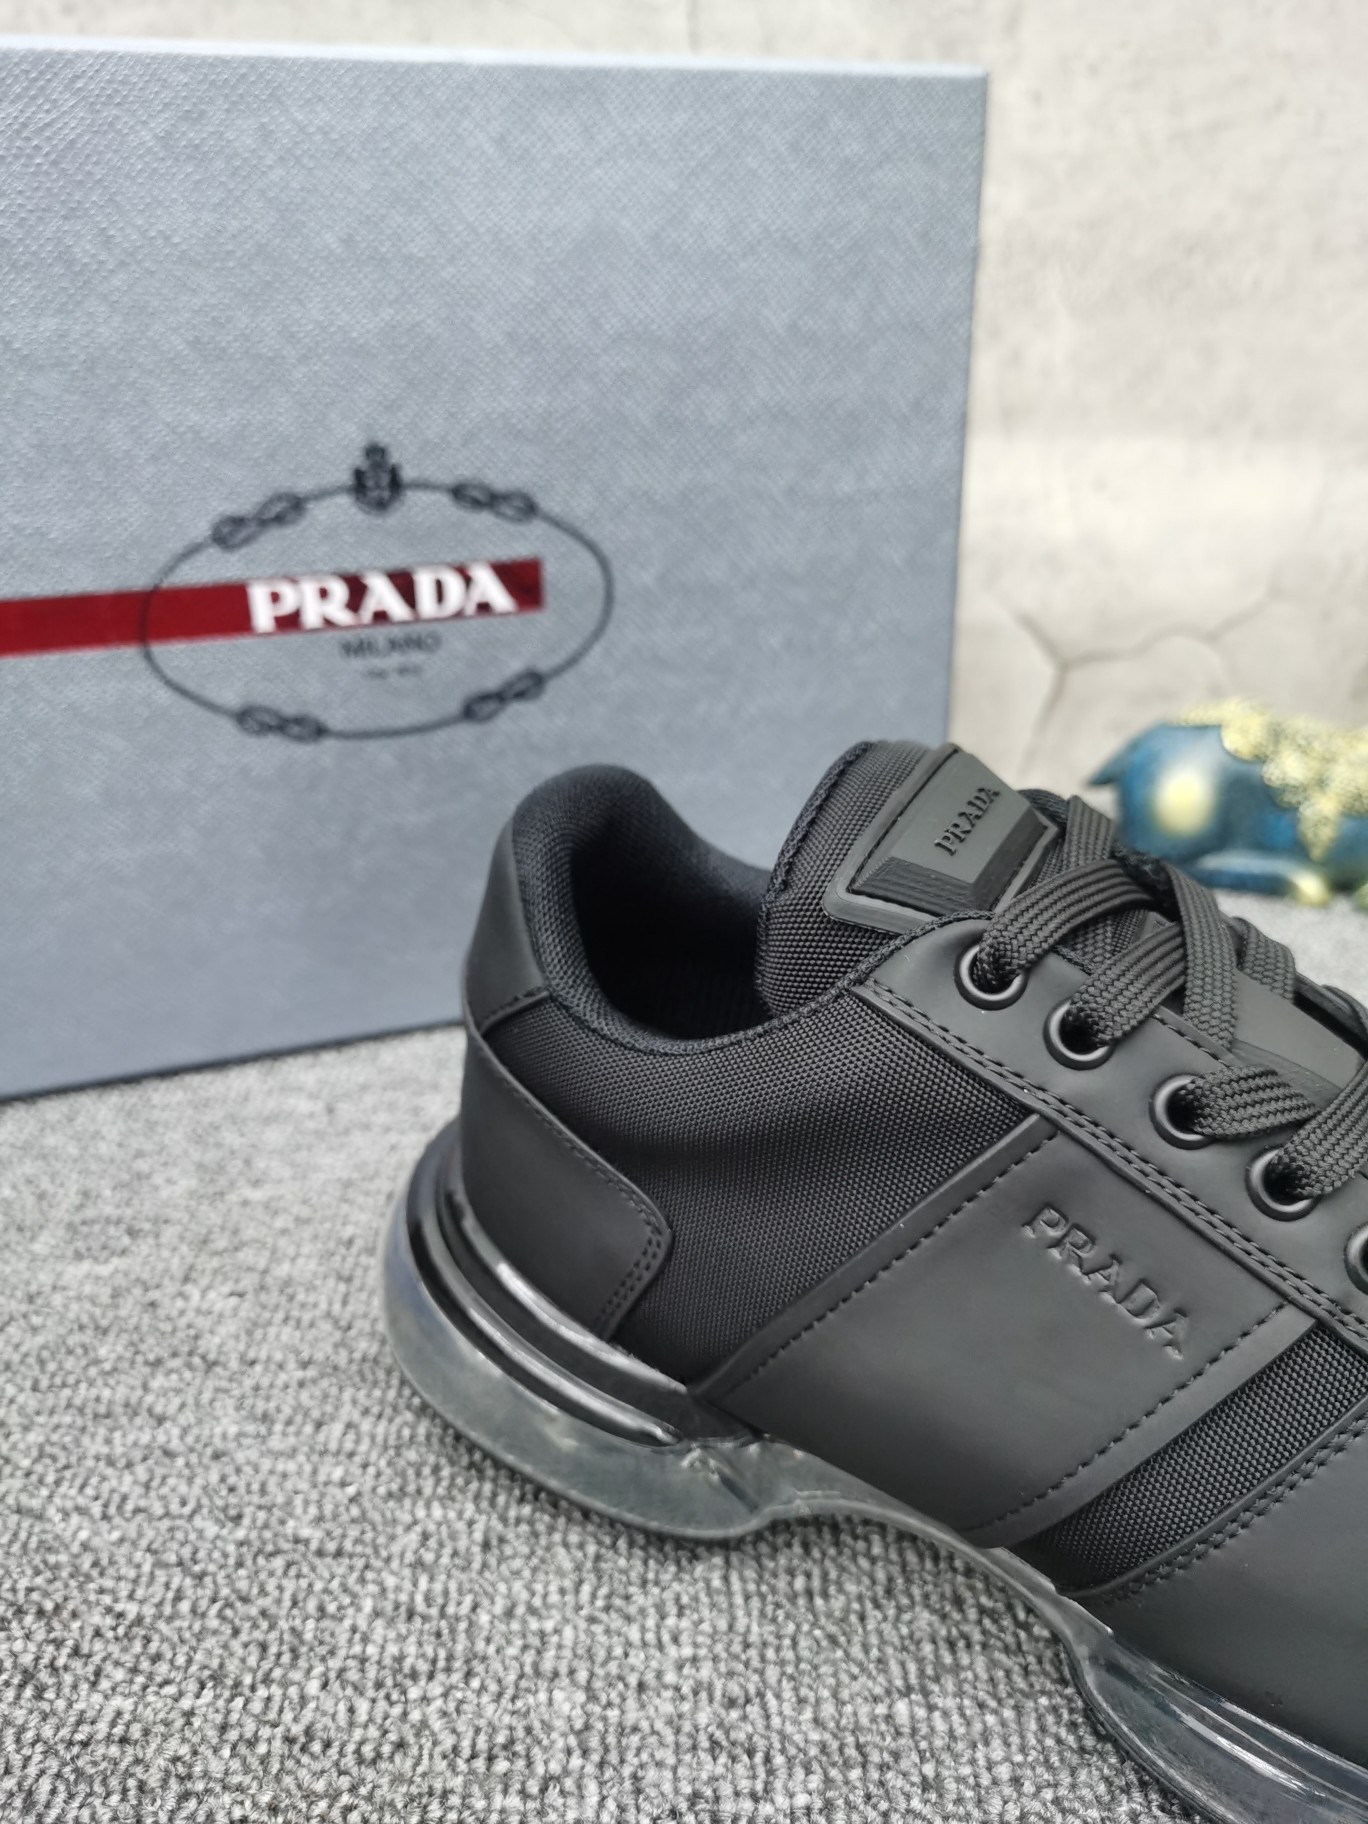 PRADA Sneakers 2021 new arrival Sneakers